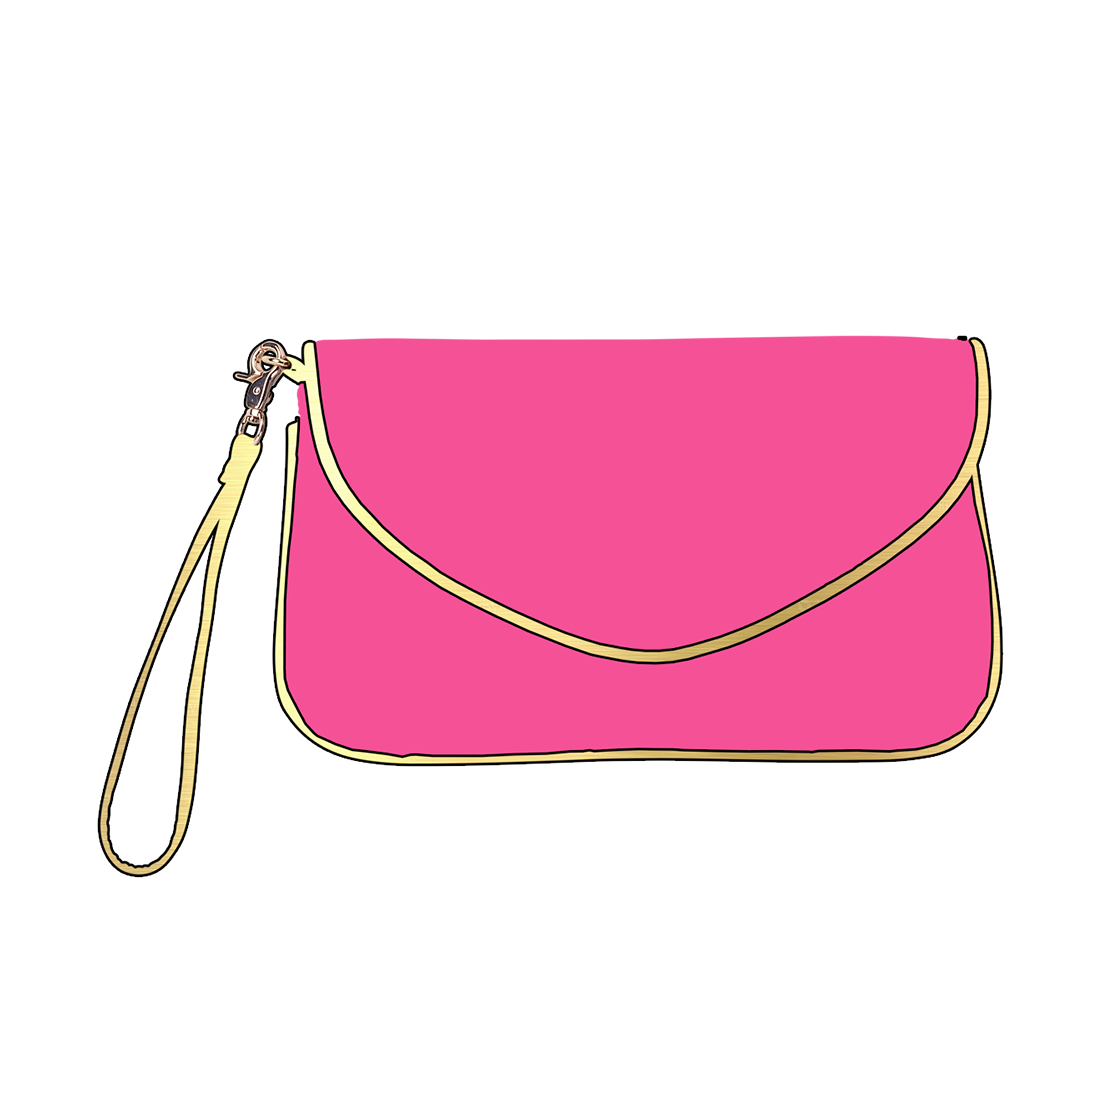 Pink Handbag Vector PNG File HD PNG Image